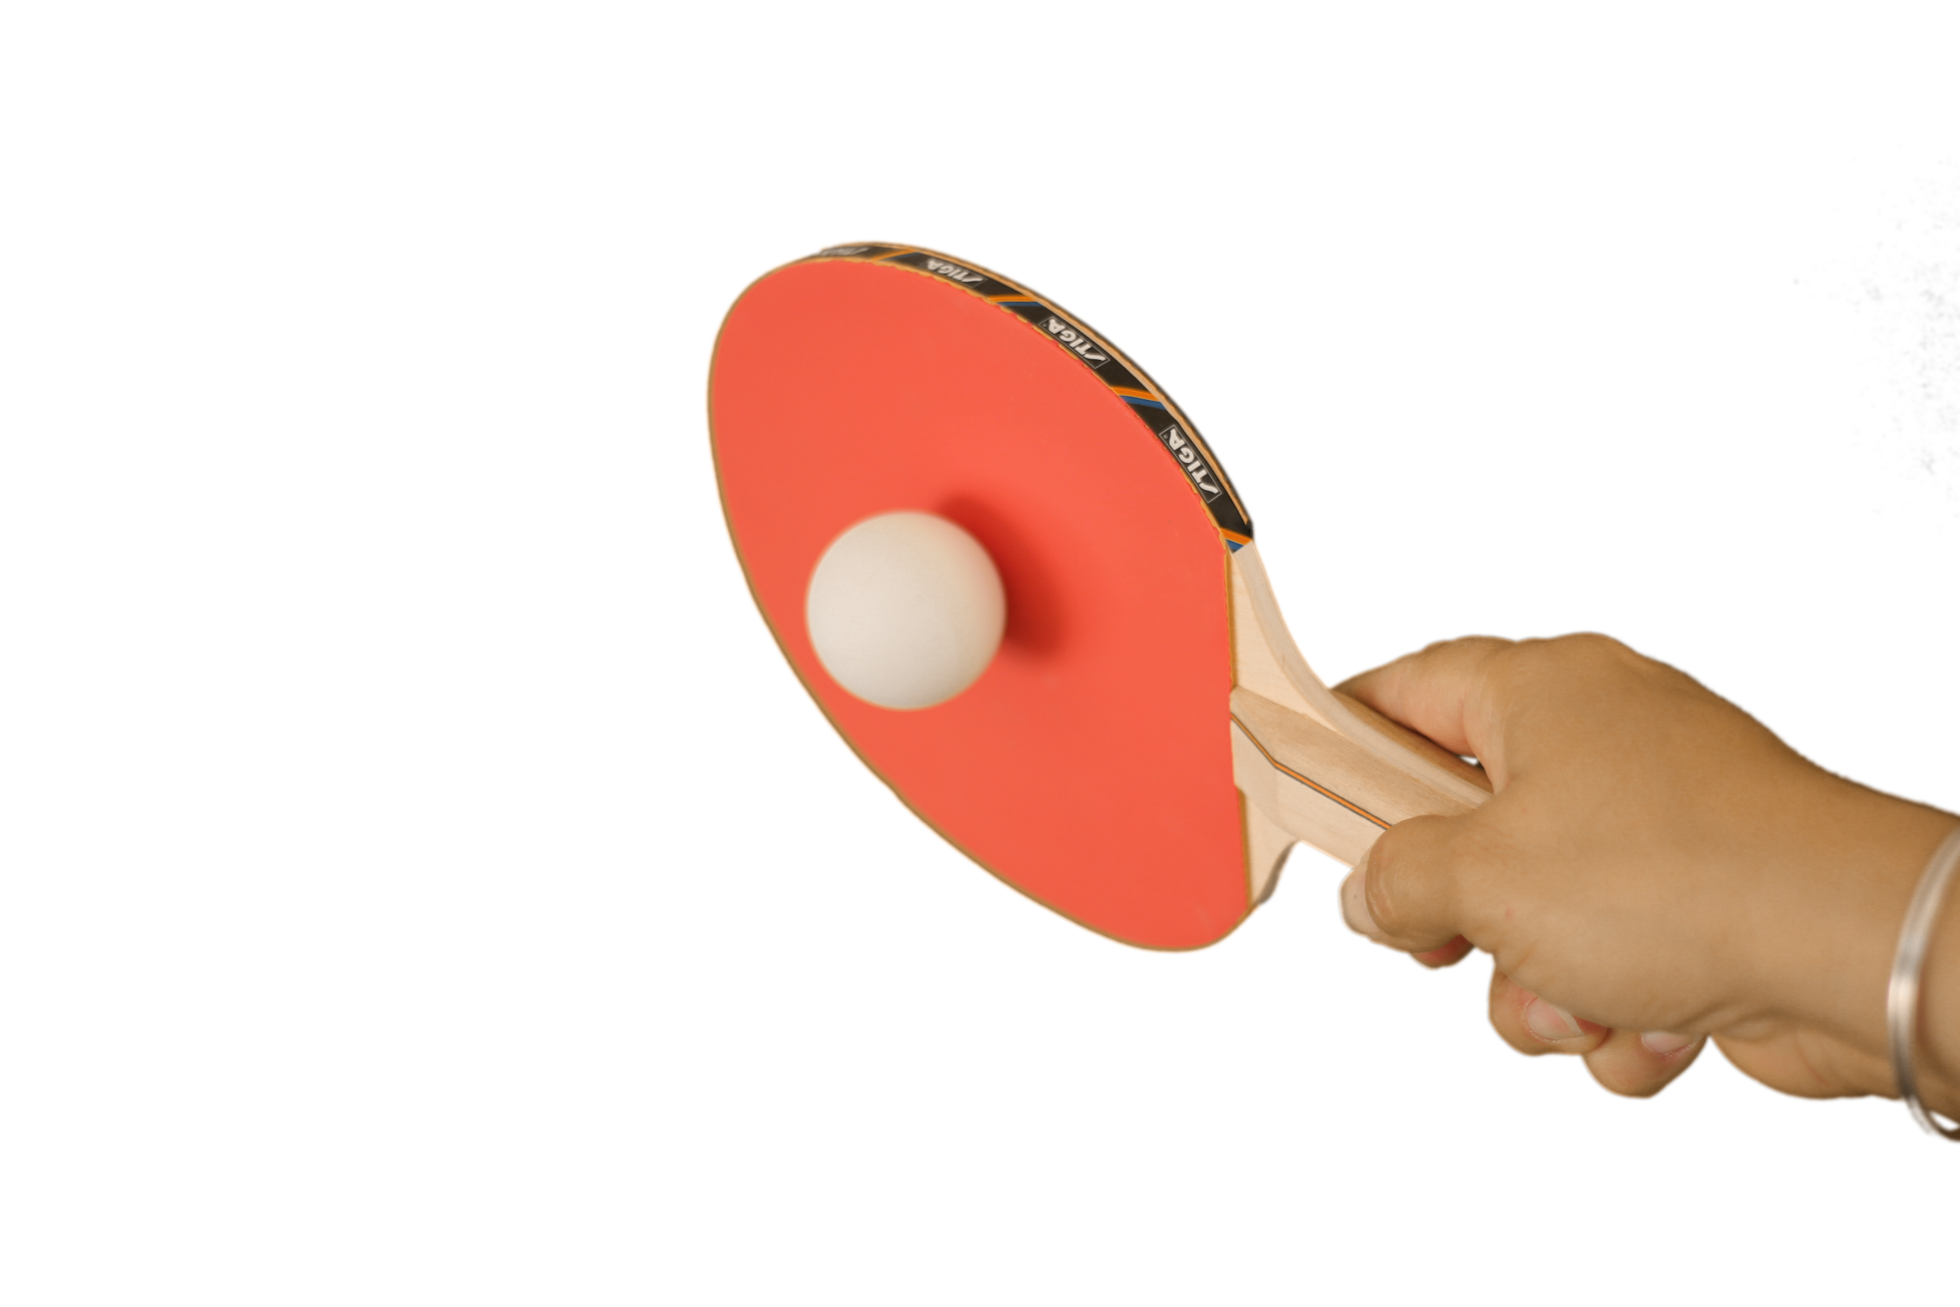 Raquette de tennis de table en main